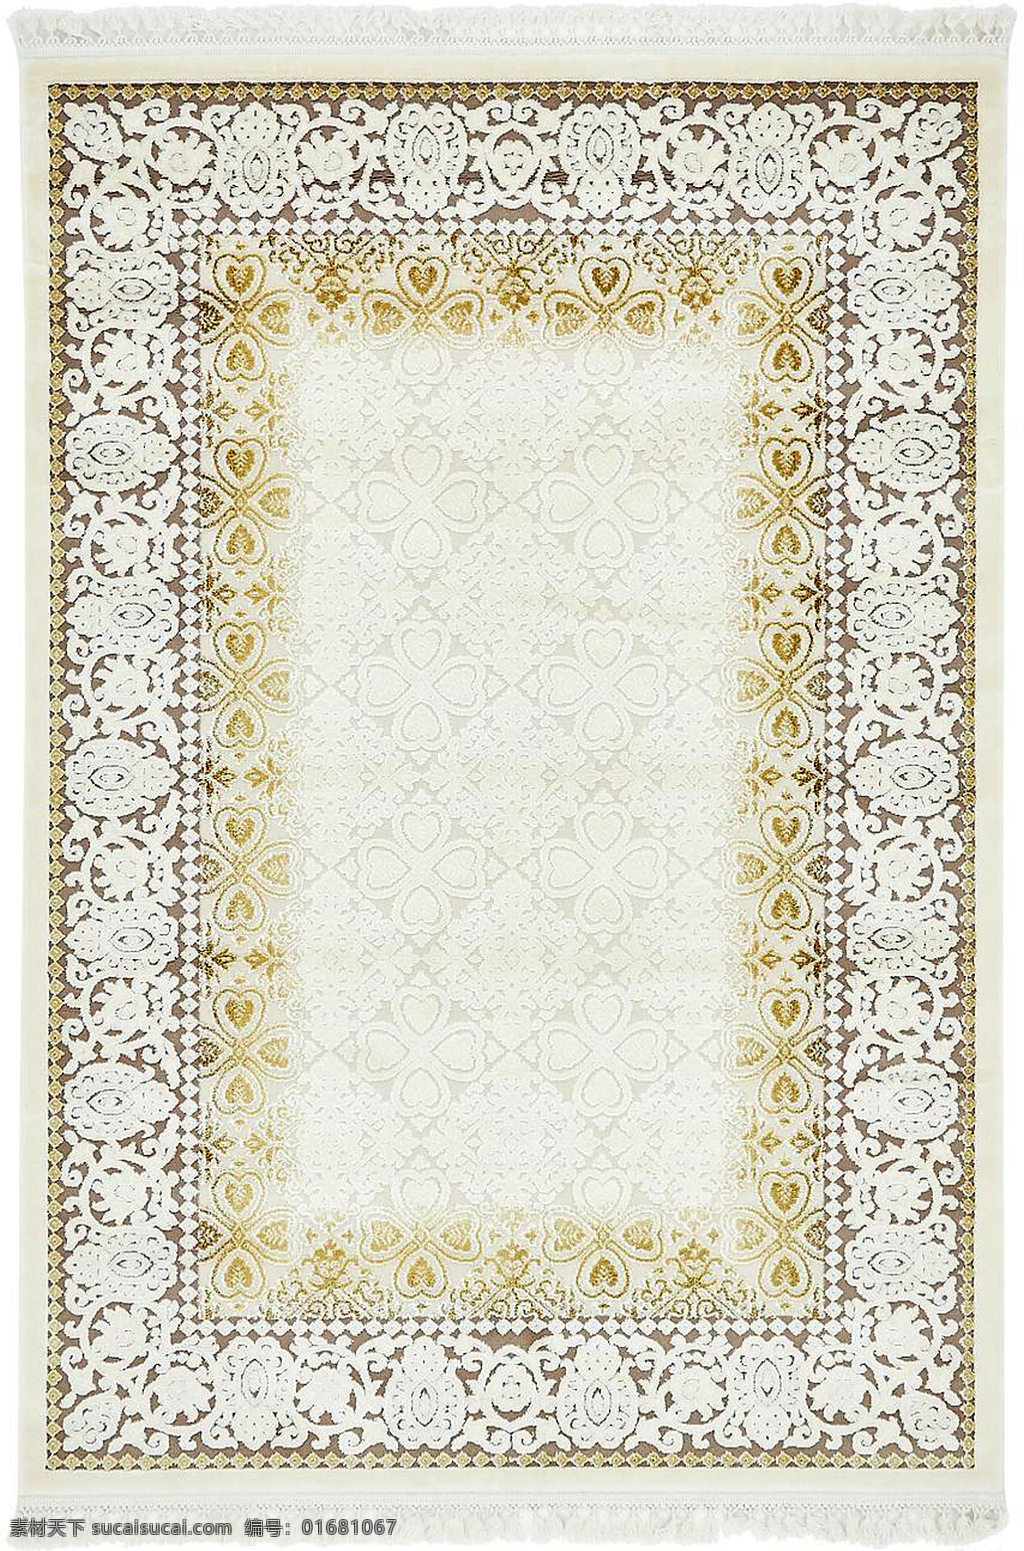 古典 经典 地毯 花纹 坐垫 毛毯 布料 欧洲风情 矩形 图纹